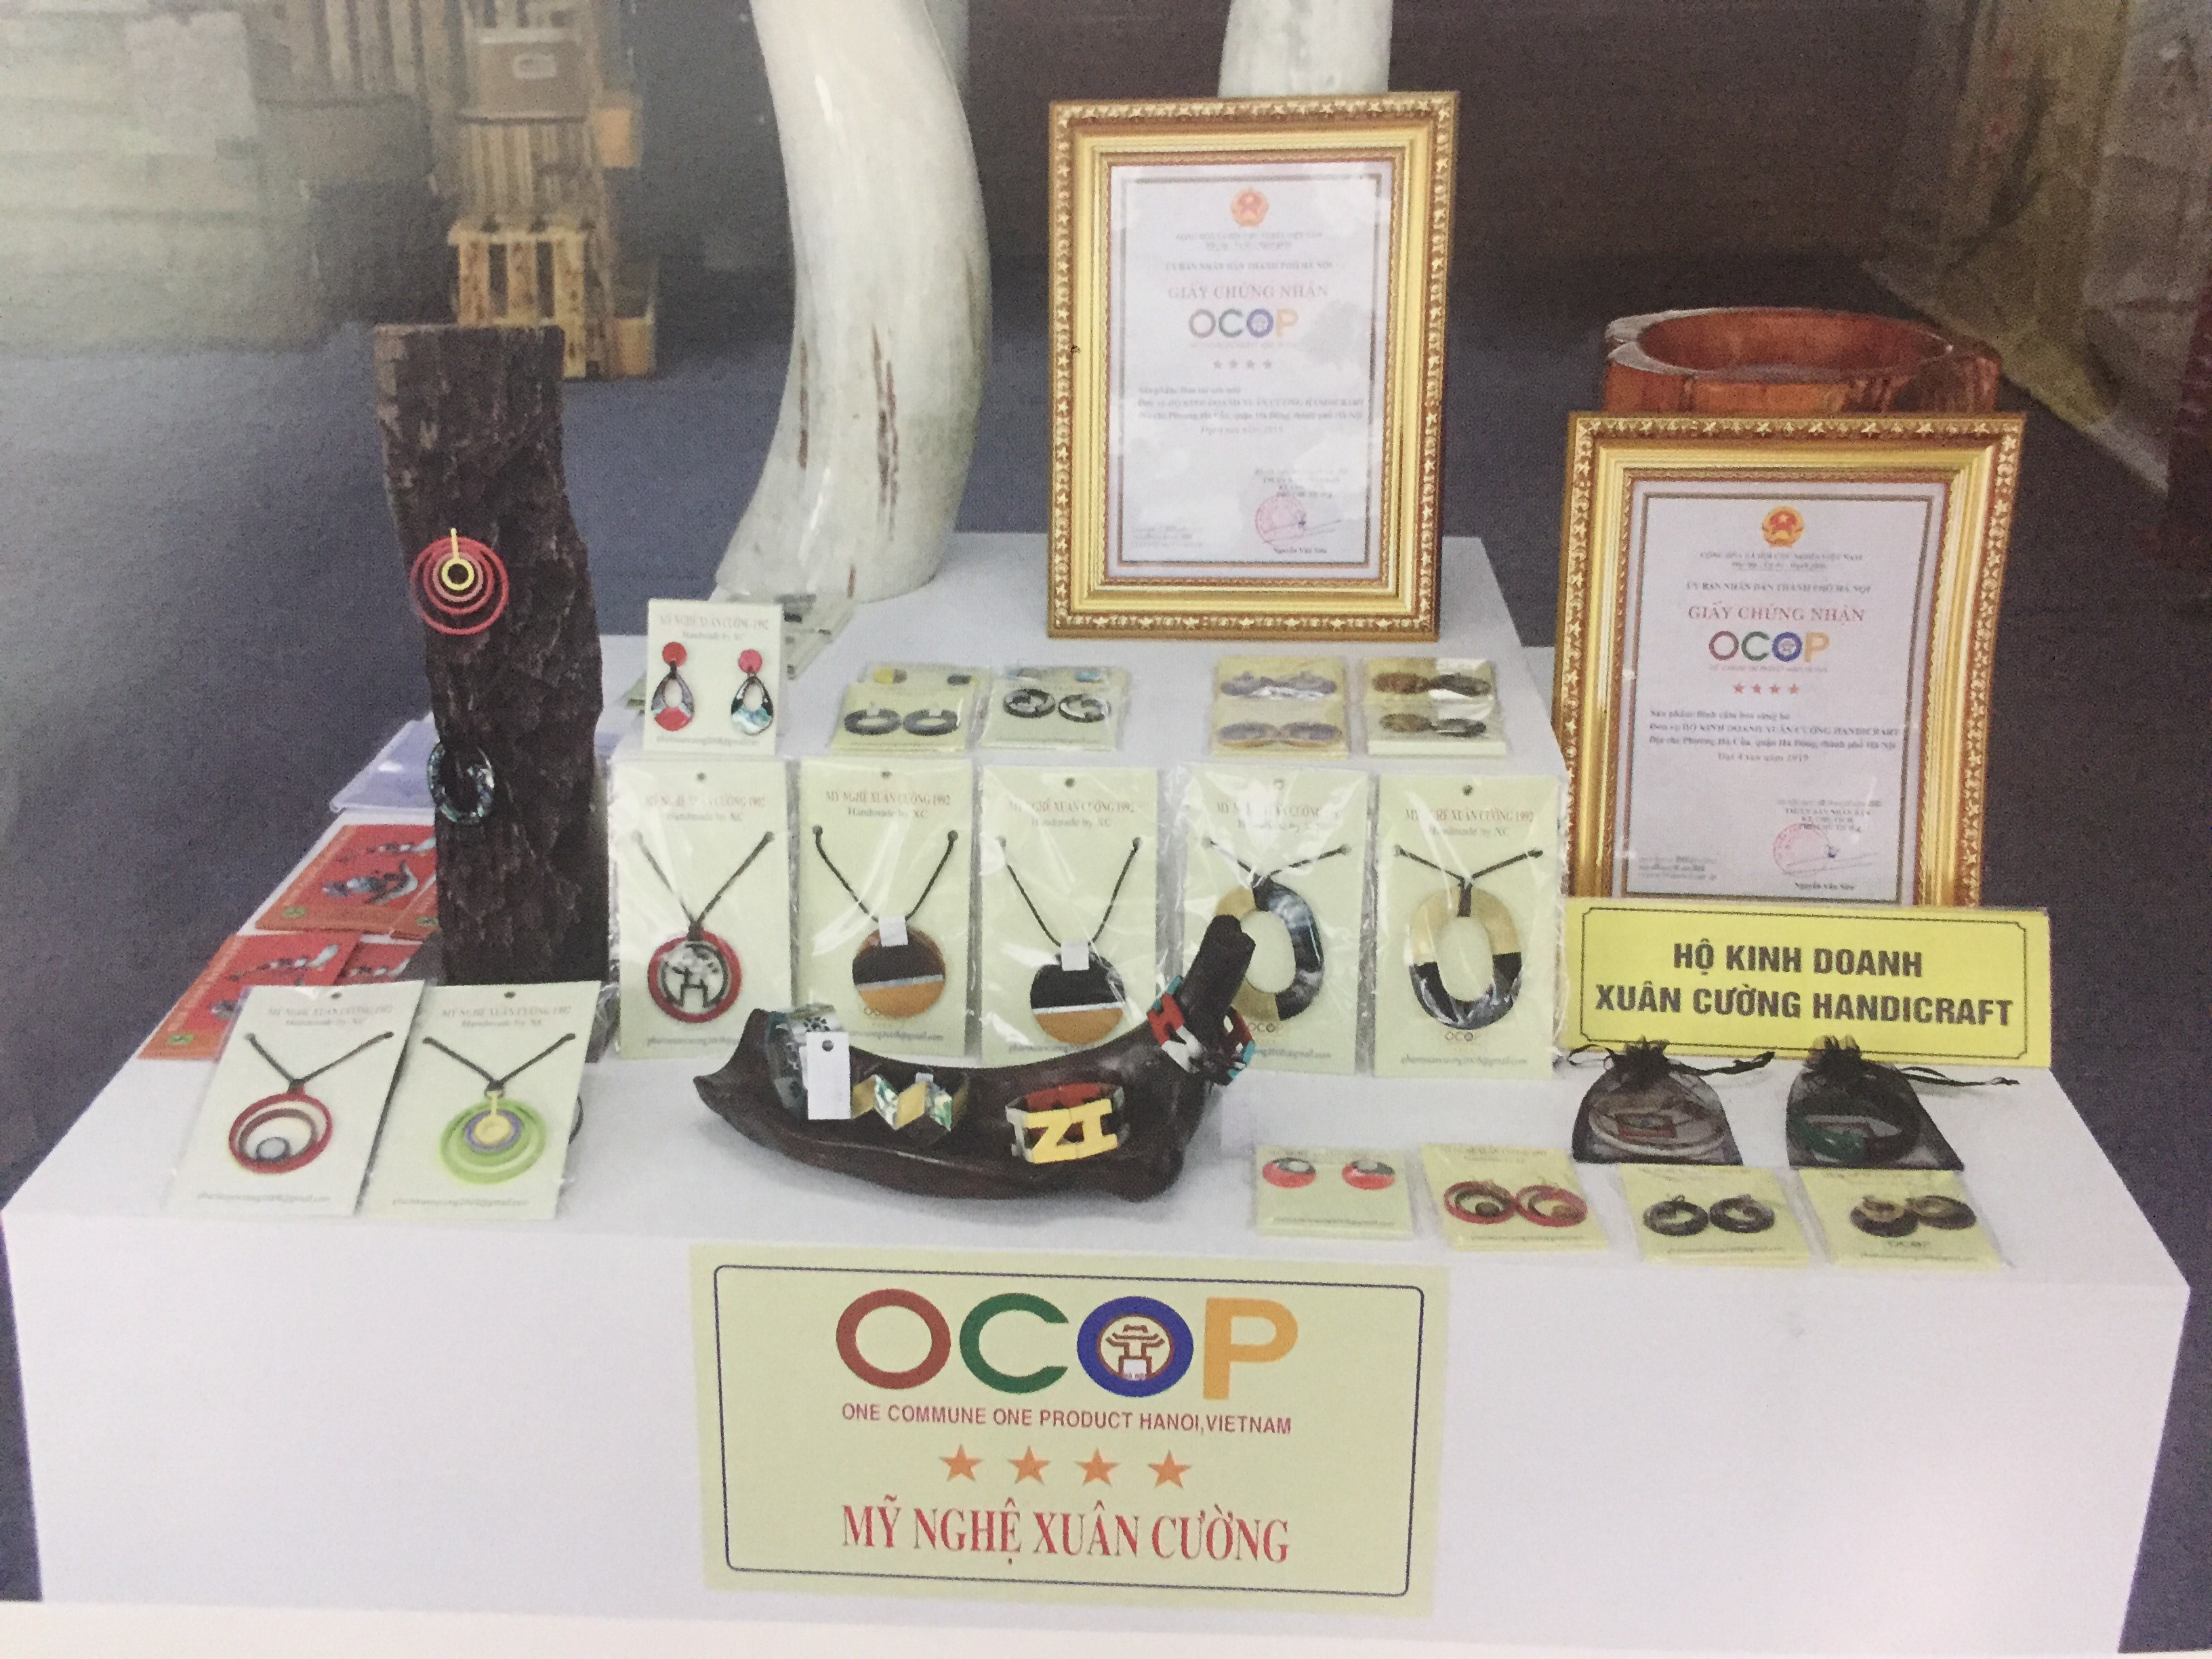 Sản phẩm OCOP 4 sao của hộ kinh doanh Xuân Cường Handicraft